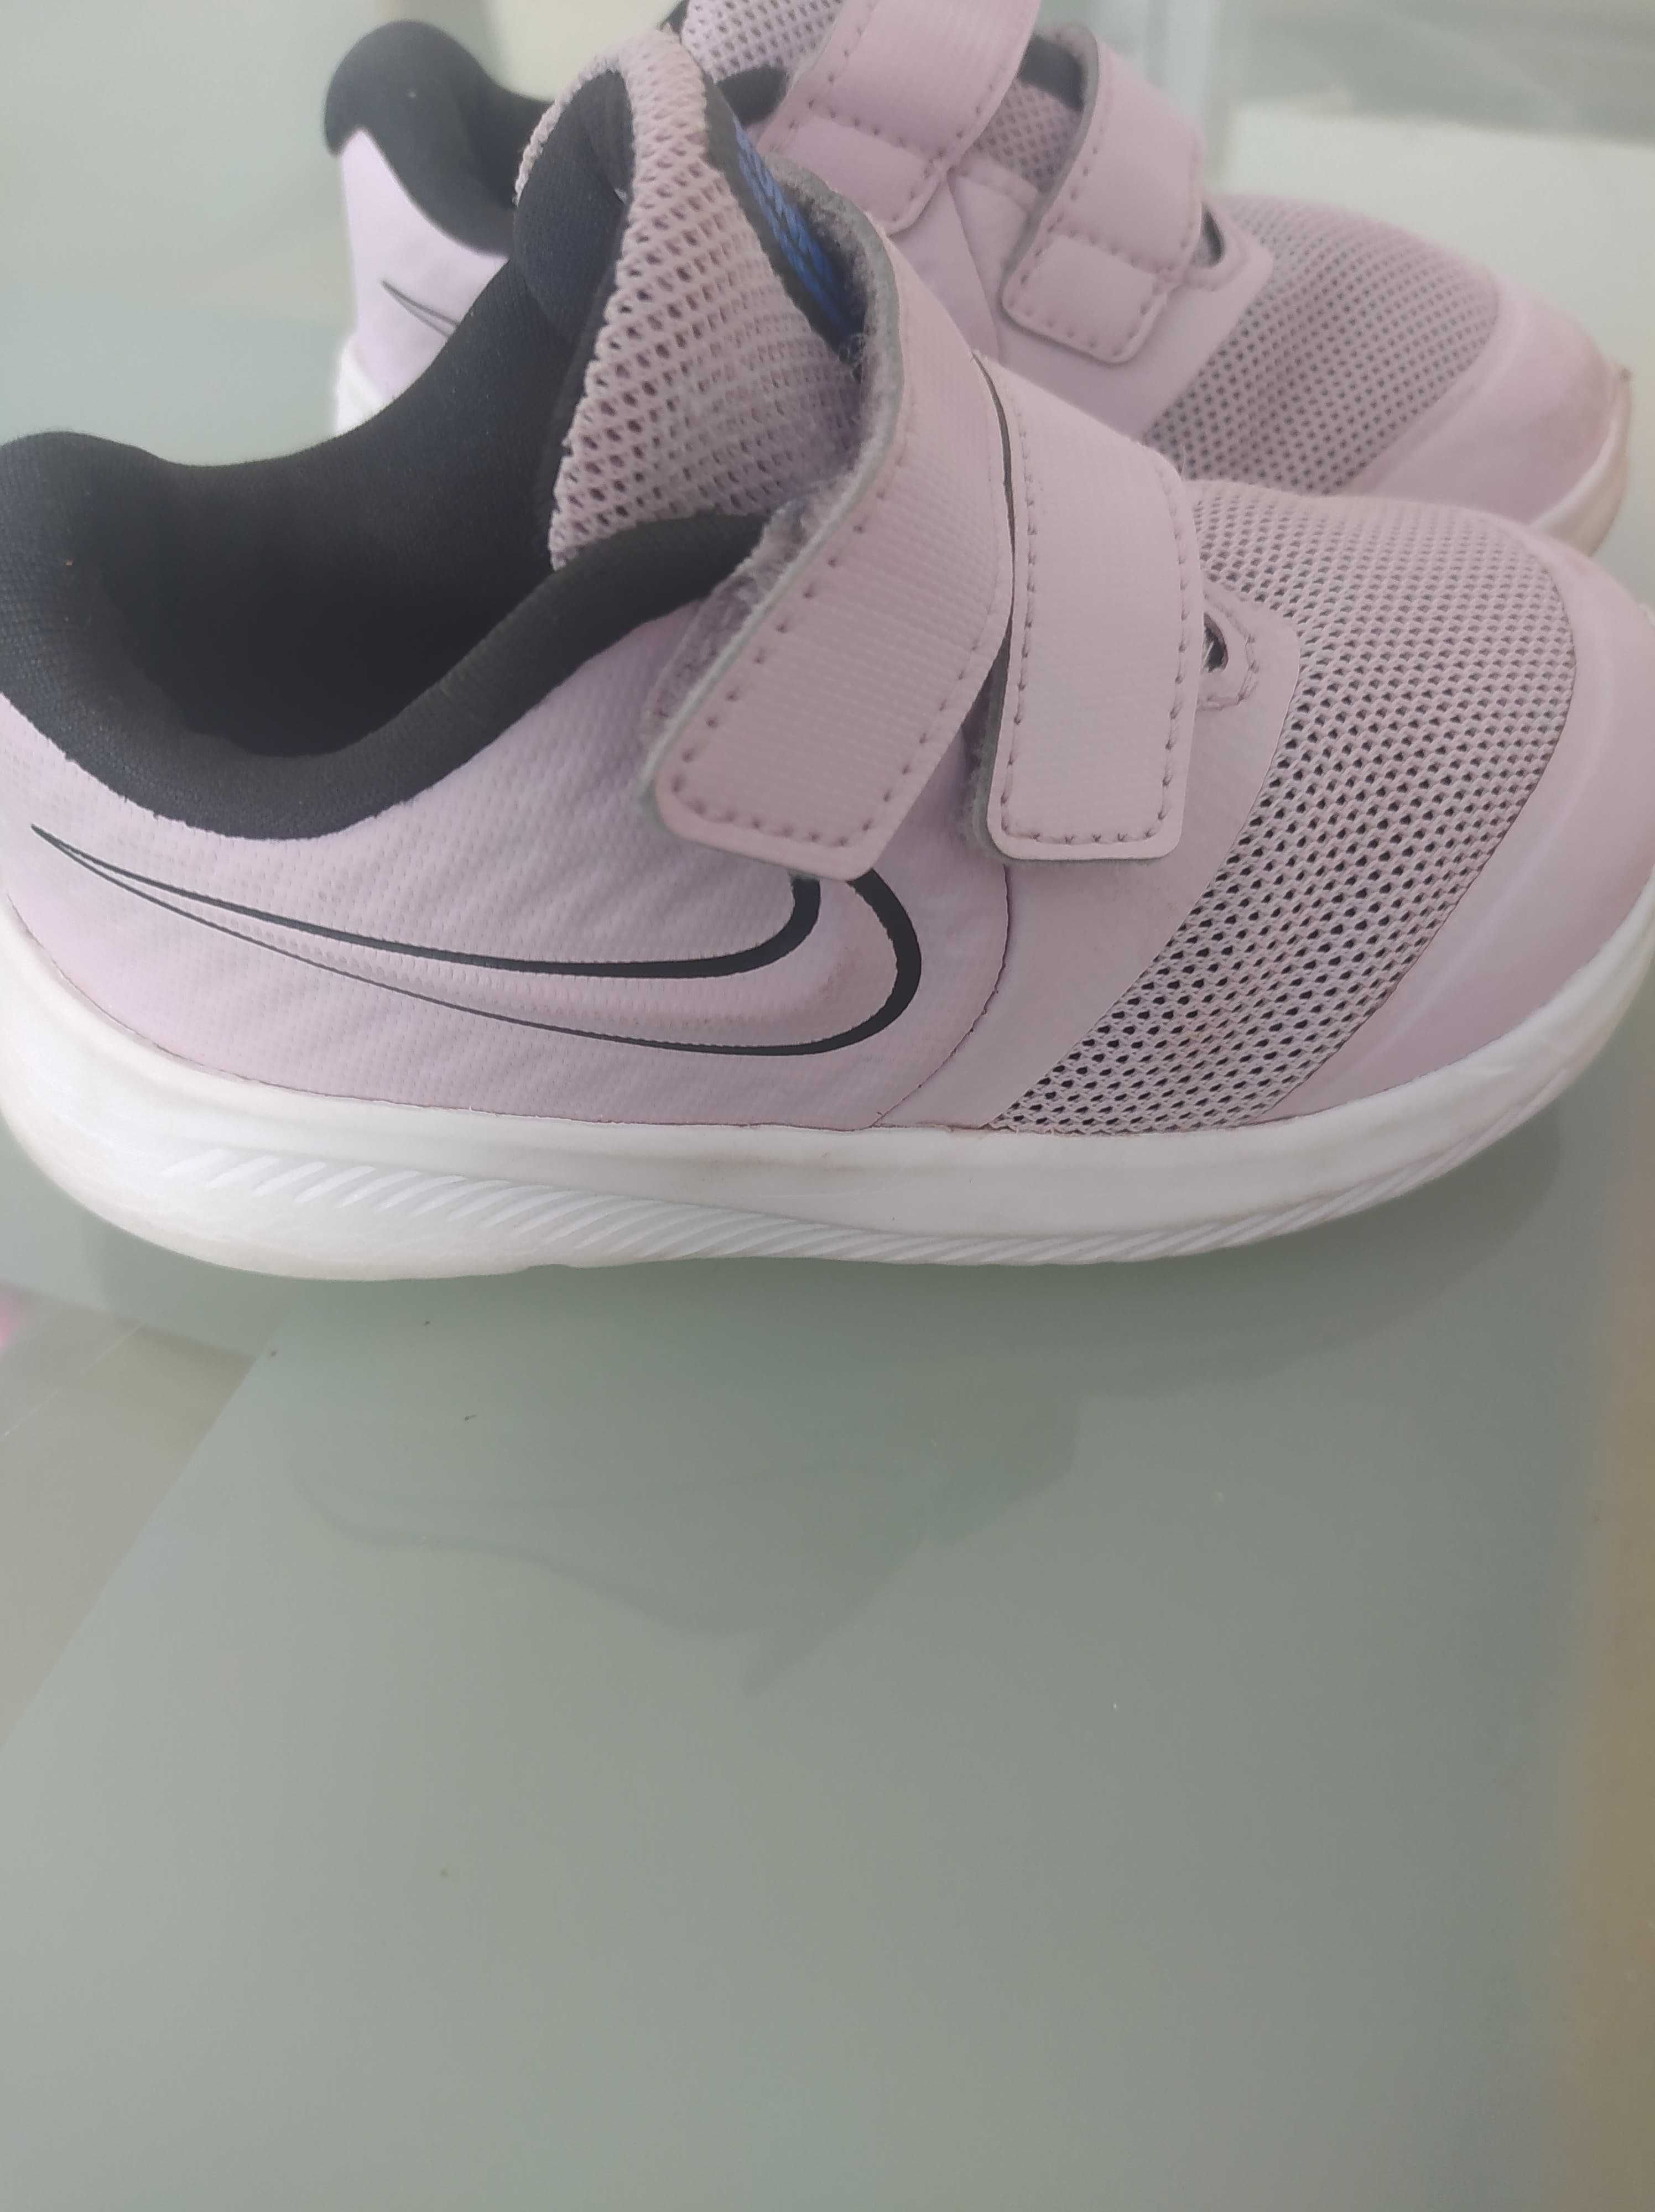 Buty Nike rozmiar 22 Suwałki • OLX.pl